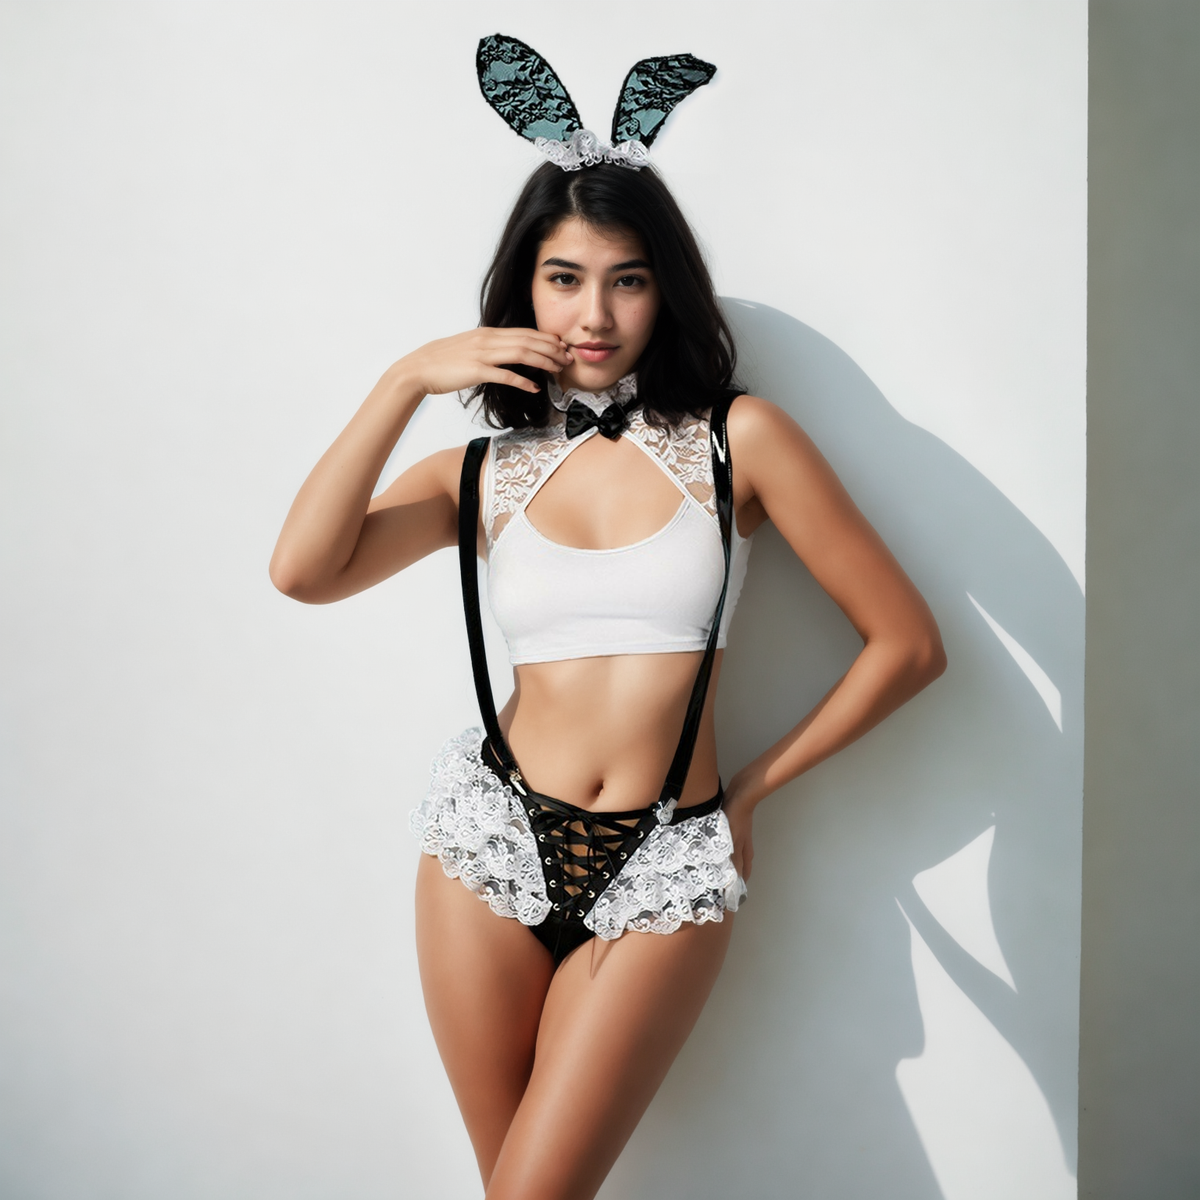 Cottontail Cutie Rabbit Costume Lingerie: Unveil Your Playful Side